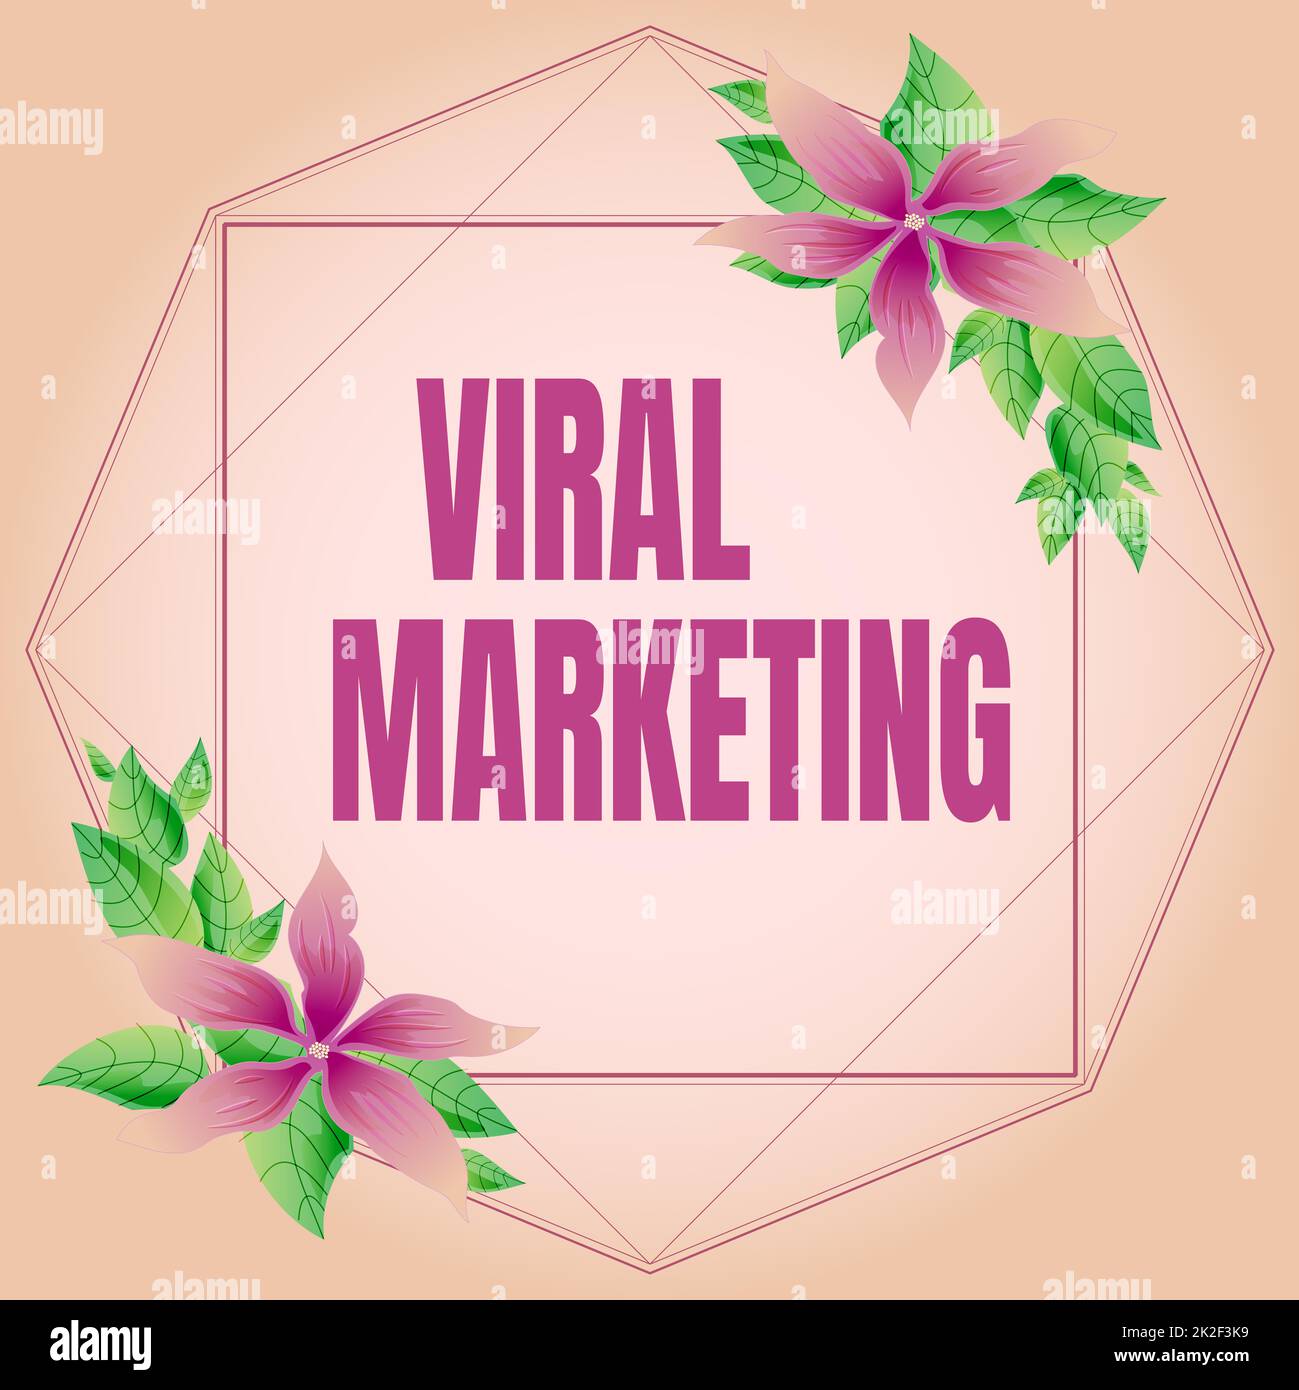 Konzeptionelle Darstellung virales Marketing. Wort für viralen Marketing-Rahmen mit bunten Blumen und Blätter harmonisch angeordnet dekoriert. Stockfoto